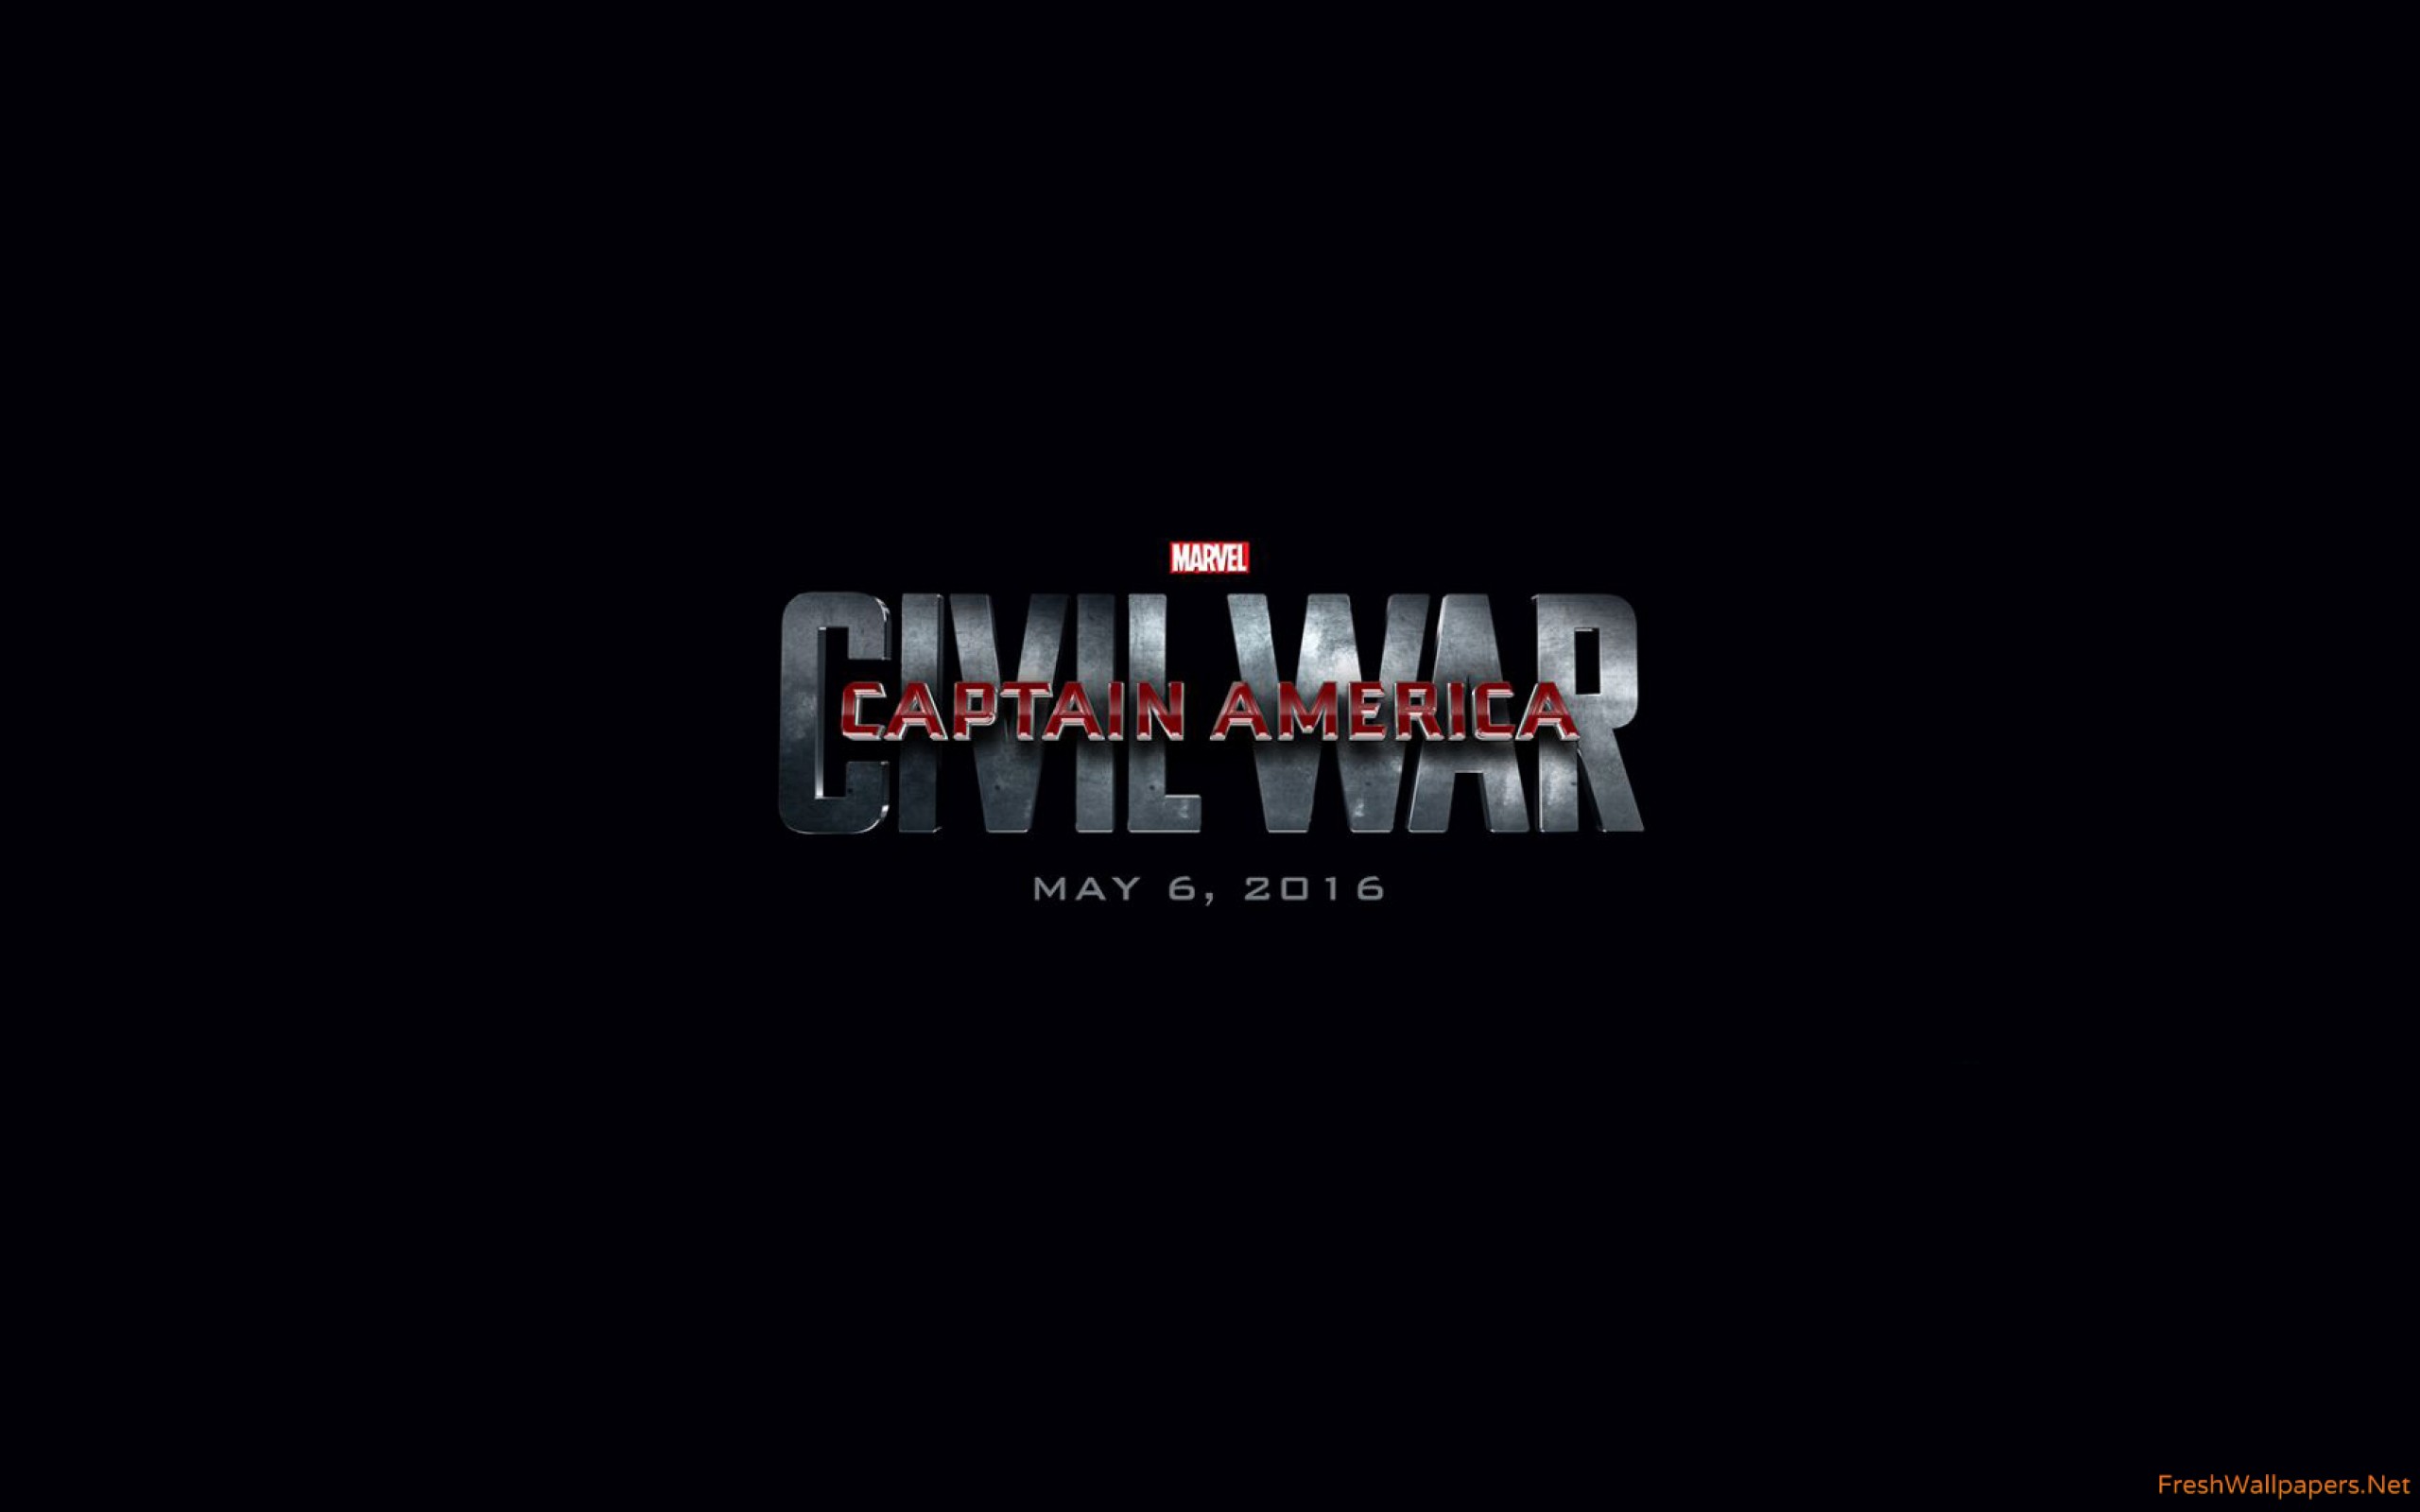 Captain America Civil War 2016 wallpapers Freshwallpapers